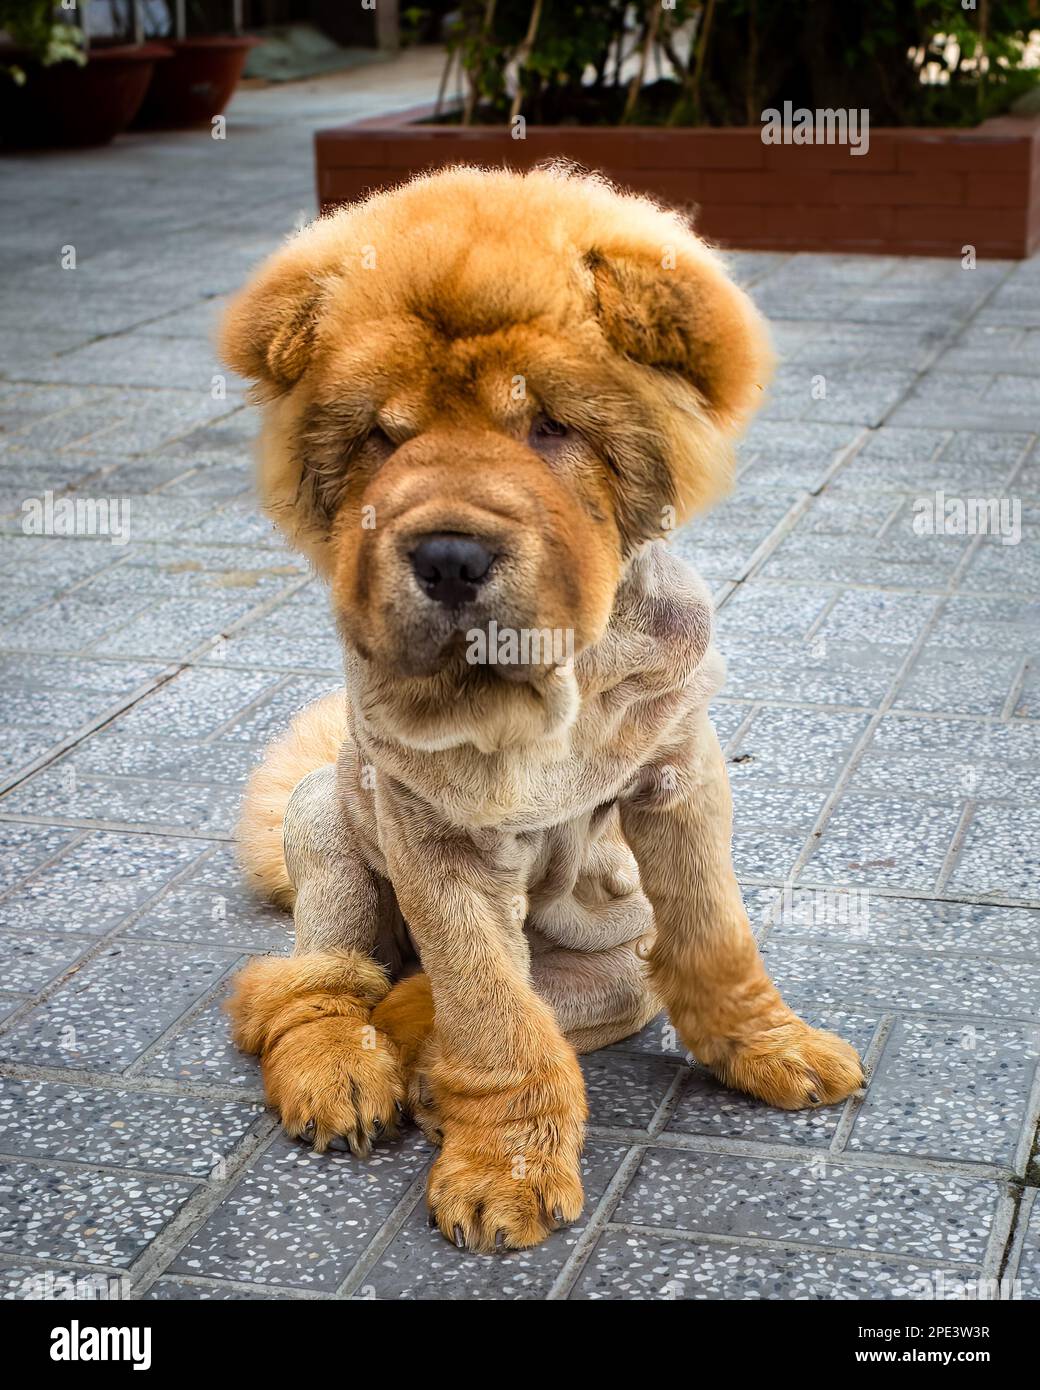 Un Shar Pei de manteau d'ours, un type de chien de Shar Pei chinois, se trouve sur la chaussée à long Xuyen, Vietnam. Banque D'Images